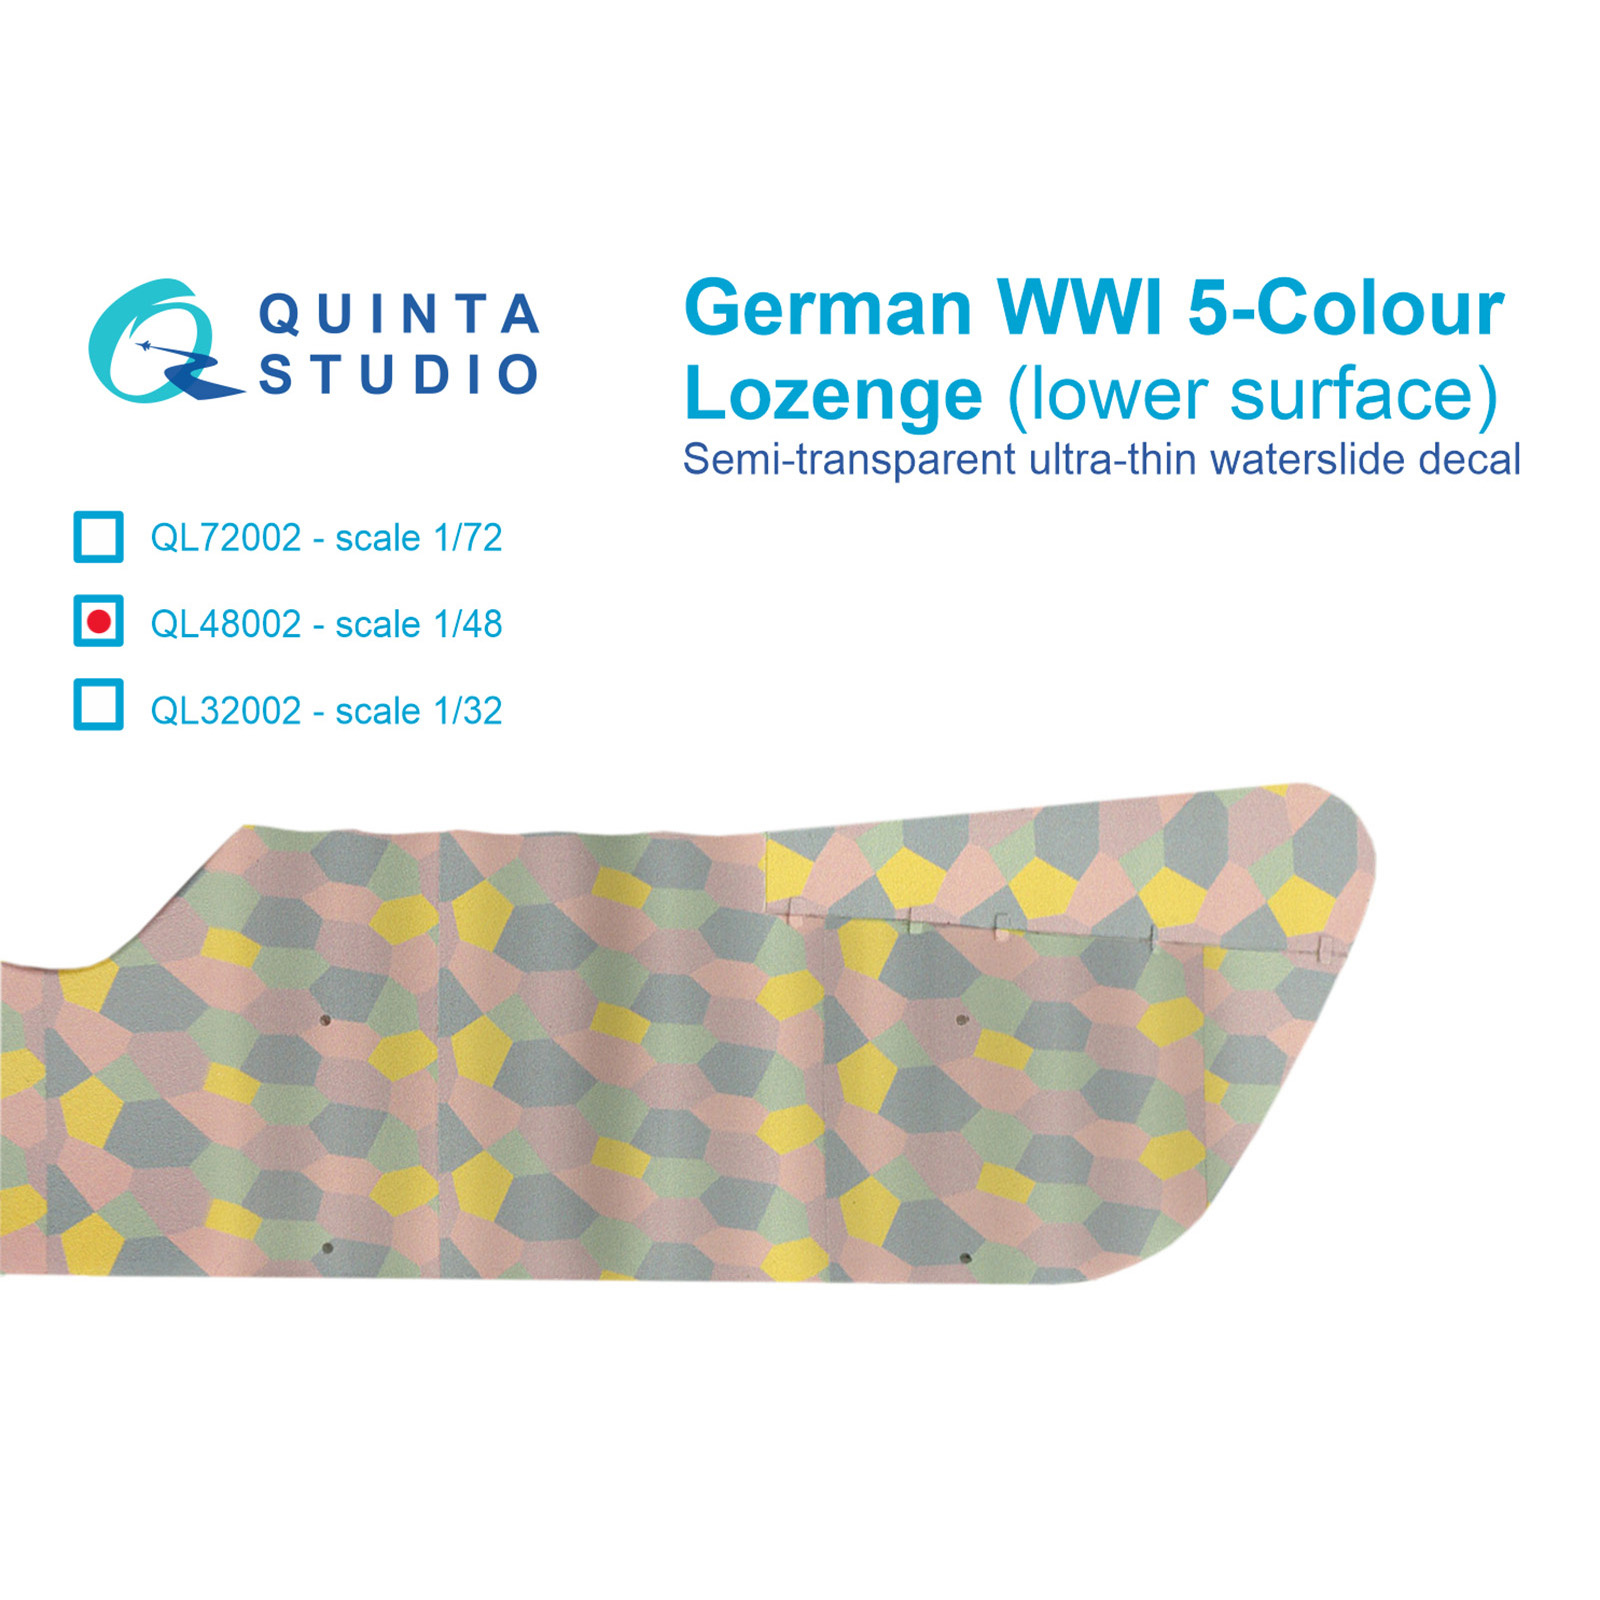 QL48002 Quinta Studio 1/48 Германский WWI 5-цветный Лозенг (нижние поверхности)